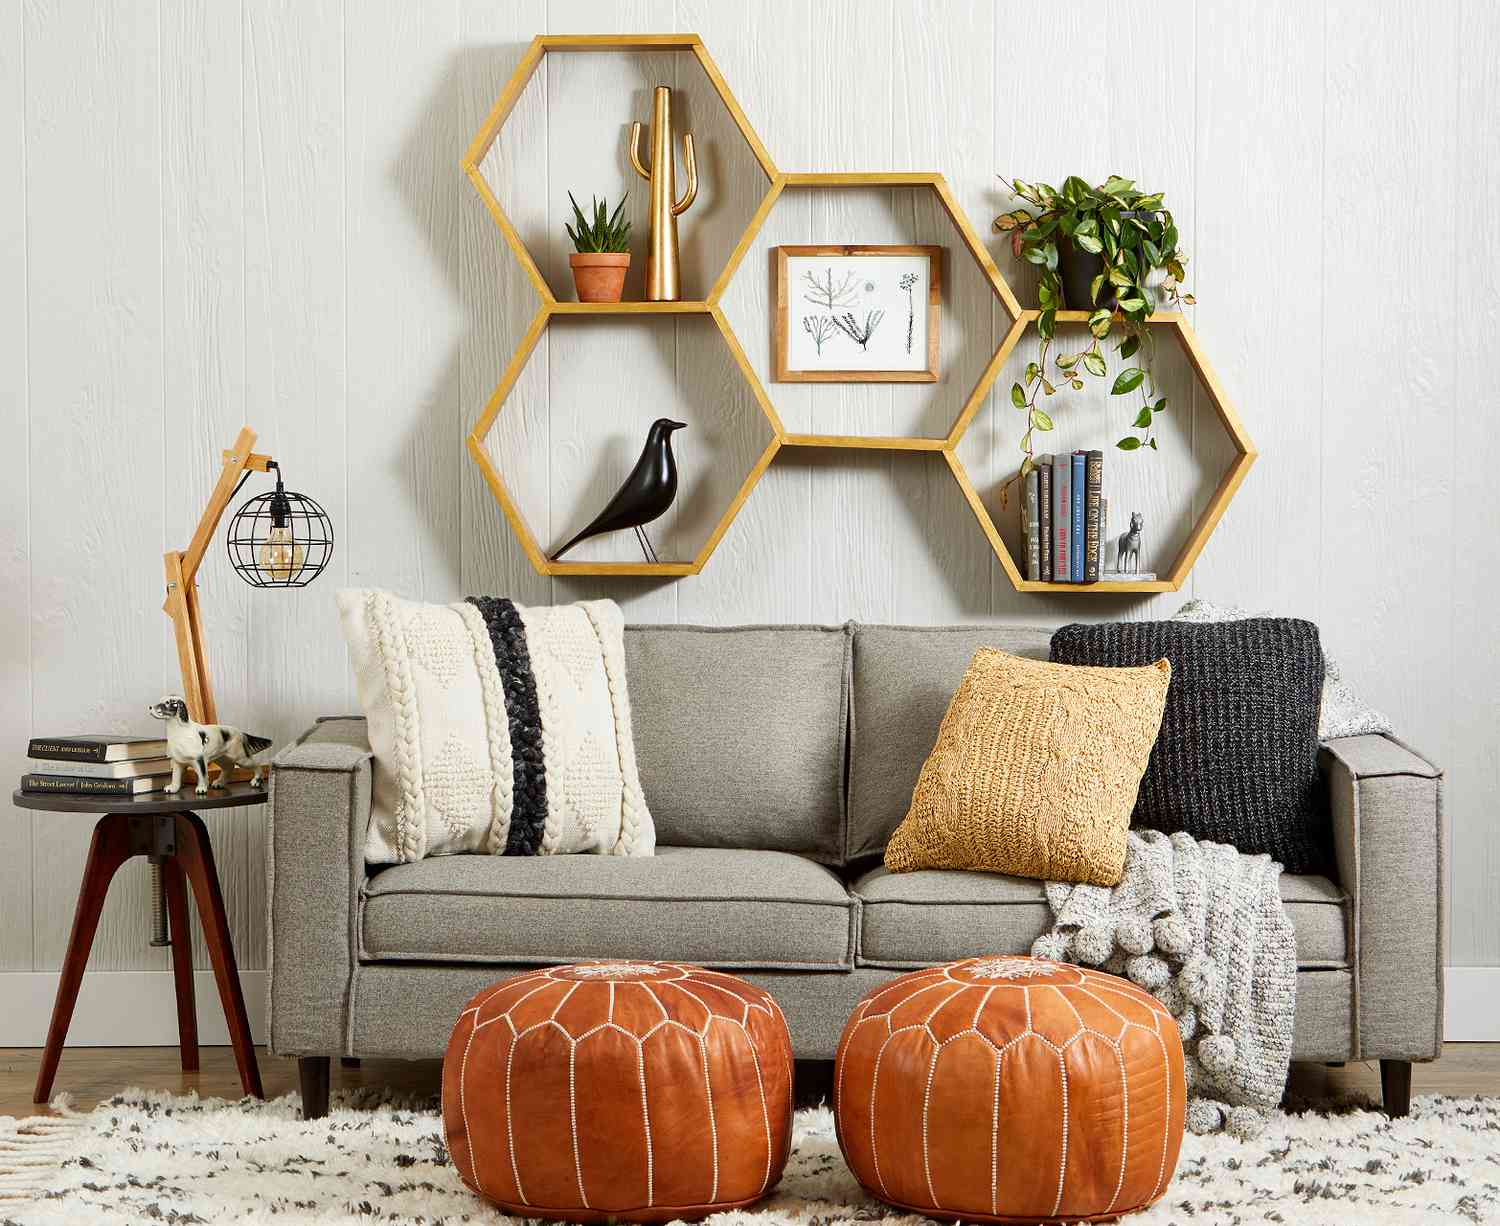 Hexagon Shelves Above Bed